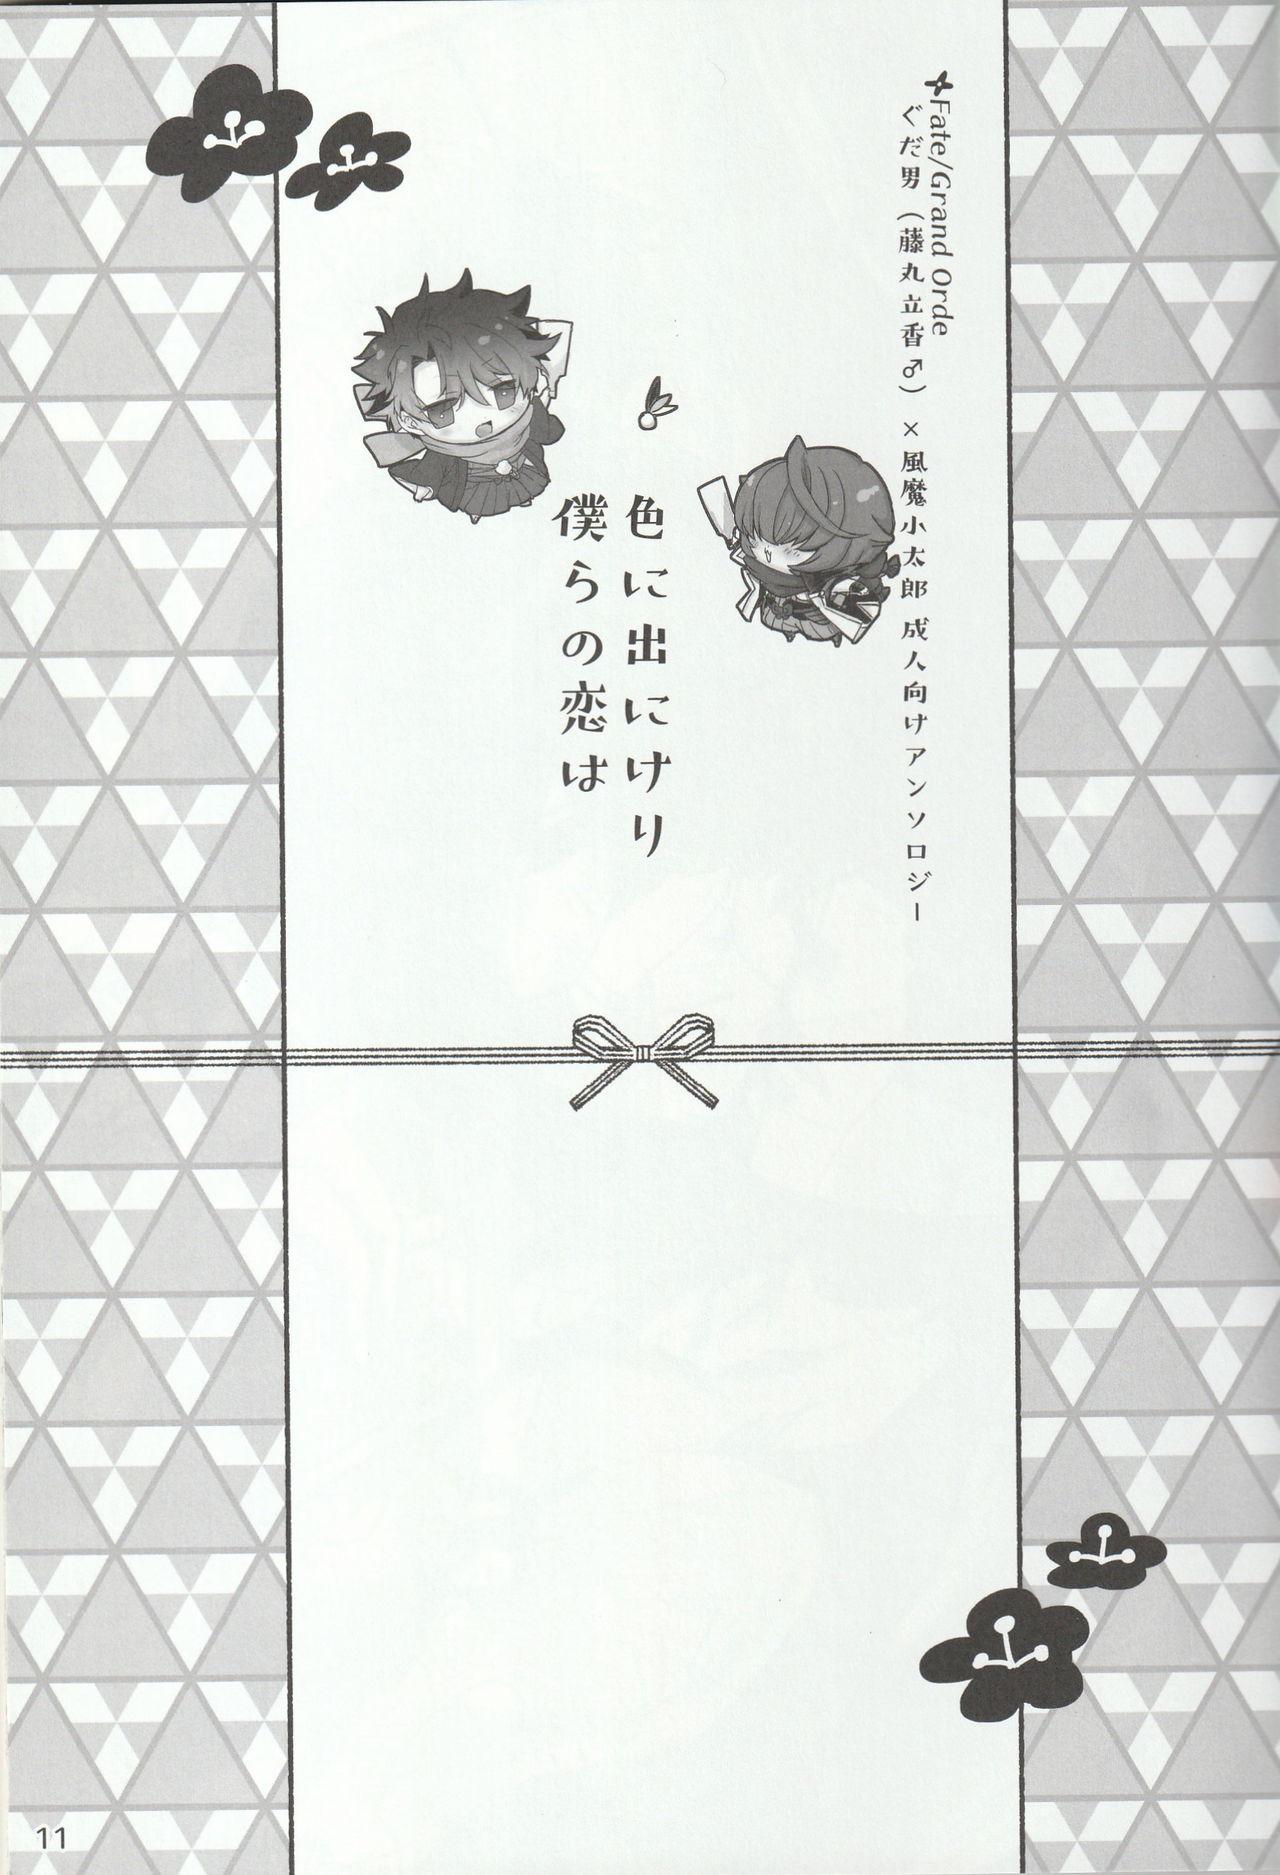 Spread Iro ni Deni keri Bokura no Koi wa - Fate grand order Flash - Page 11